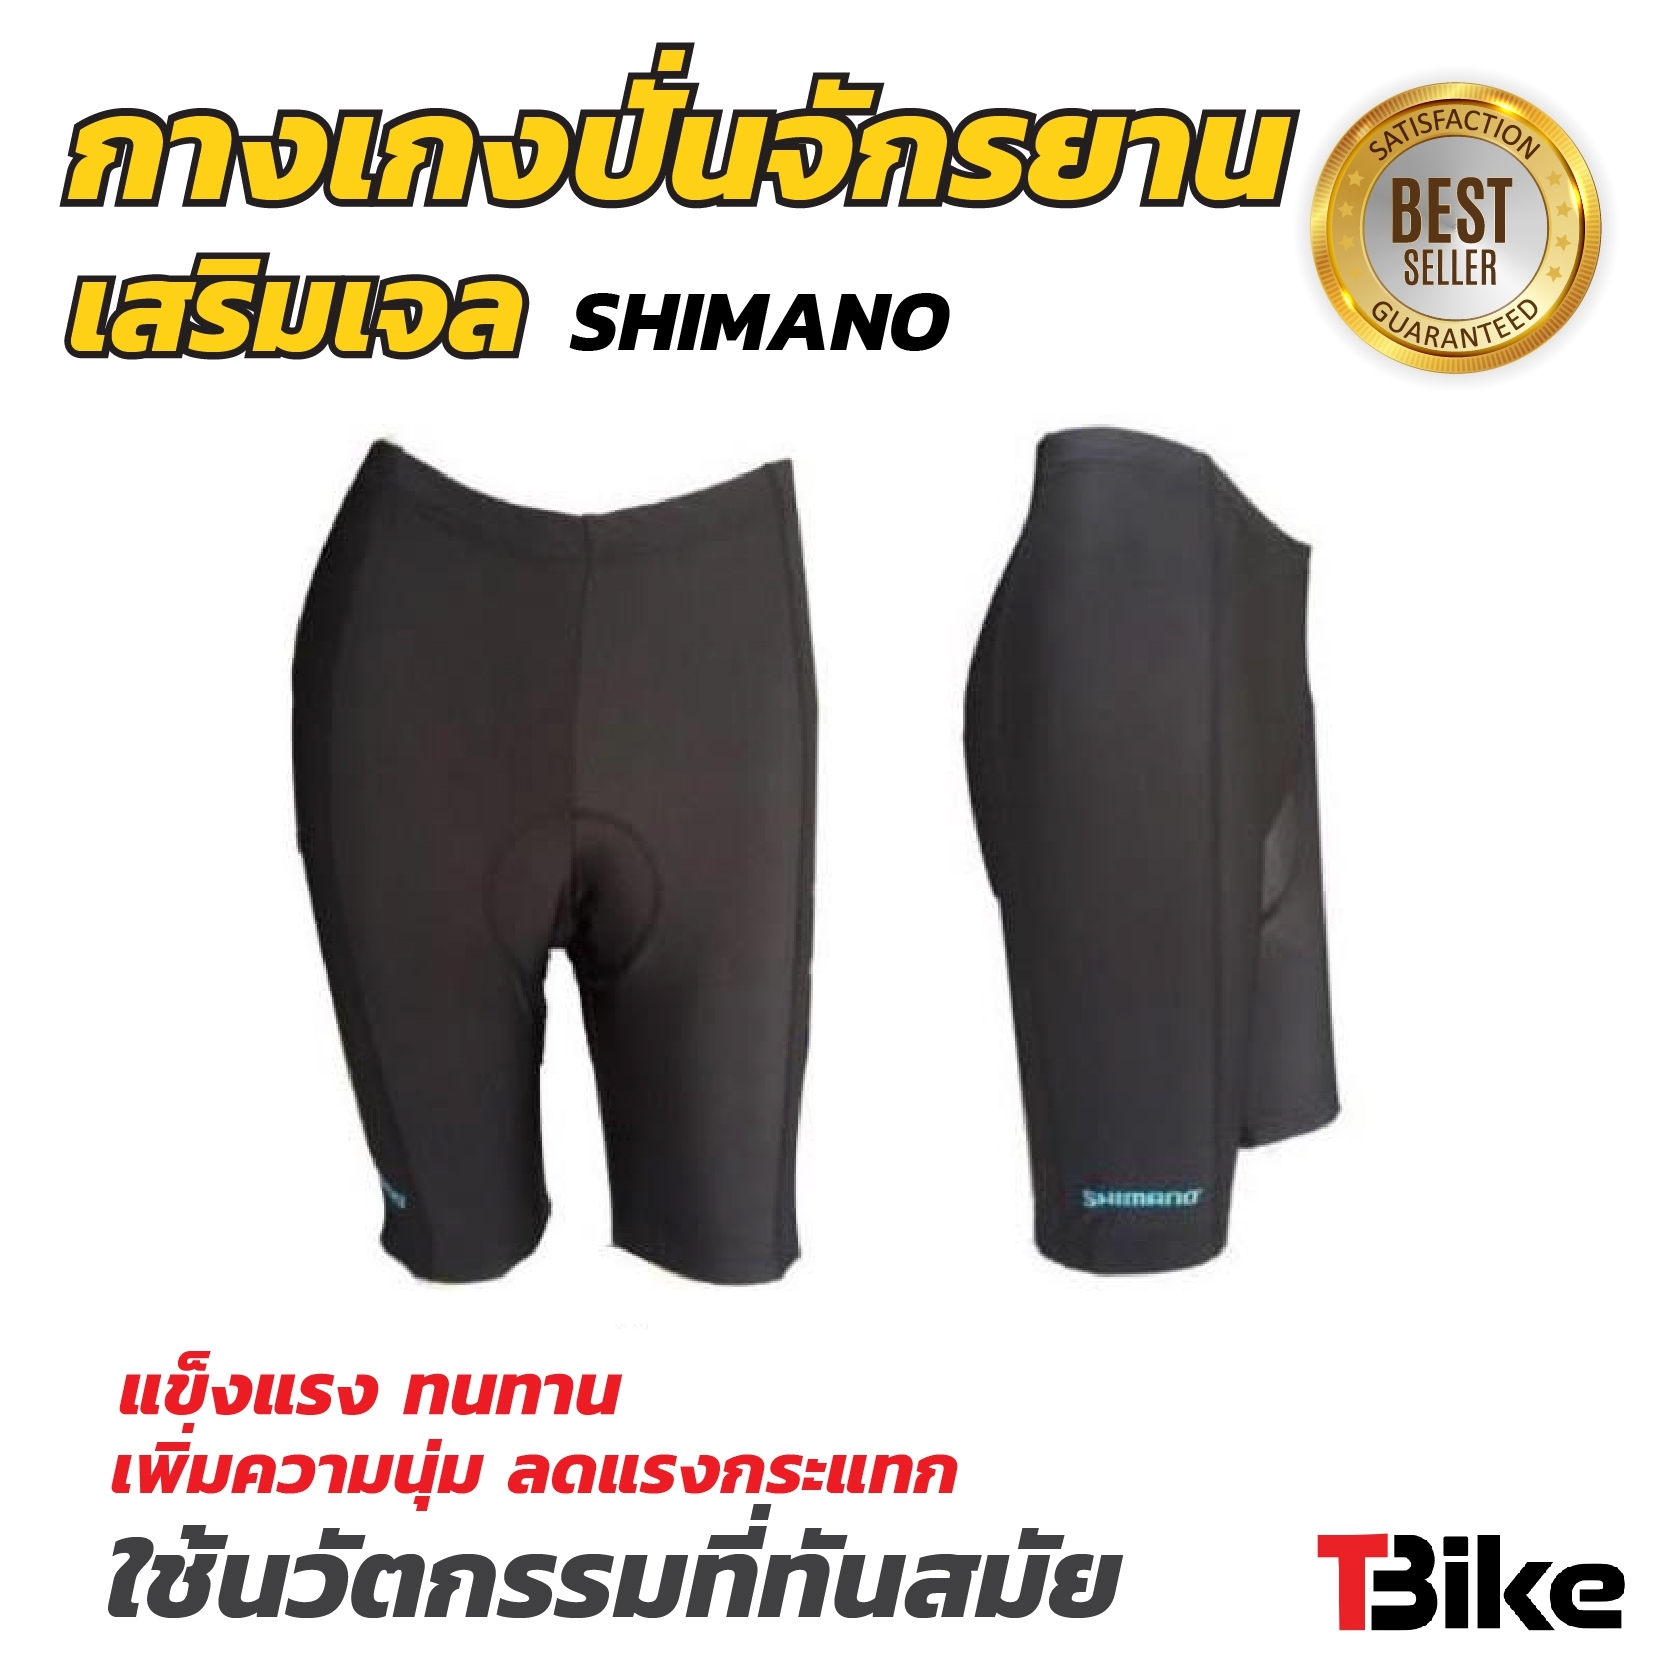 กางเกงปั่นจักรยานไซส์ L  แบบขาสั้น สำหรับใส่ปั่นจักรยาน ออกกำลังกาย  ยี่ห้อ SHIMANO   ไซส์ L สำหรับเอว 30-34